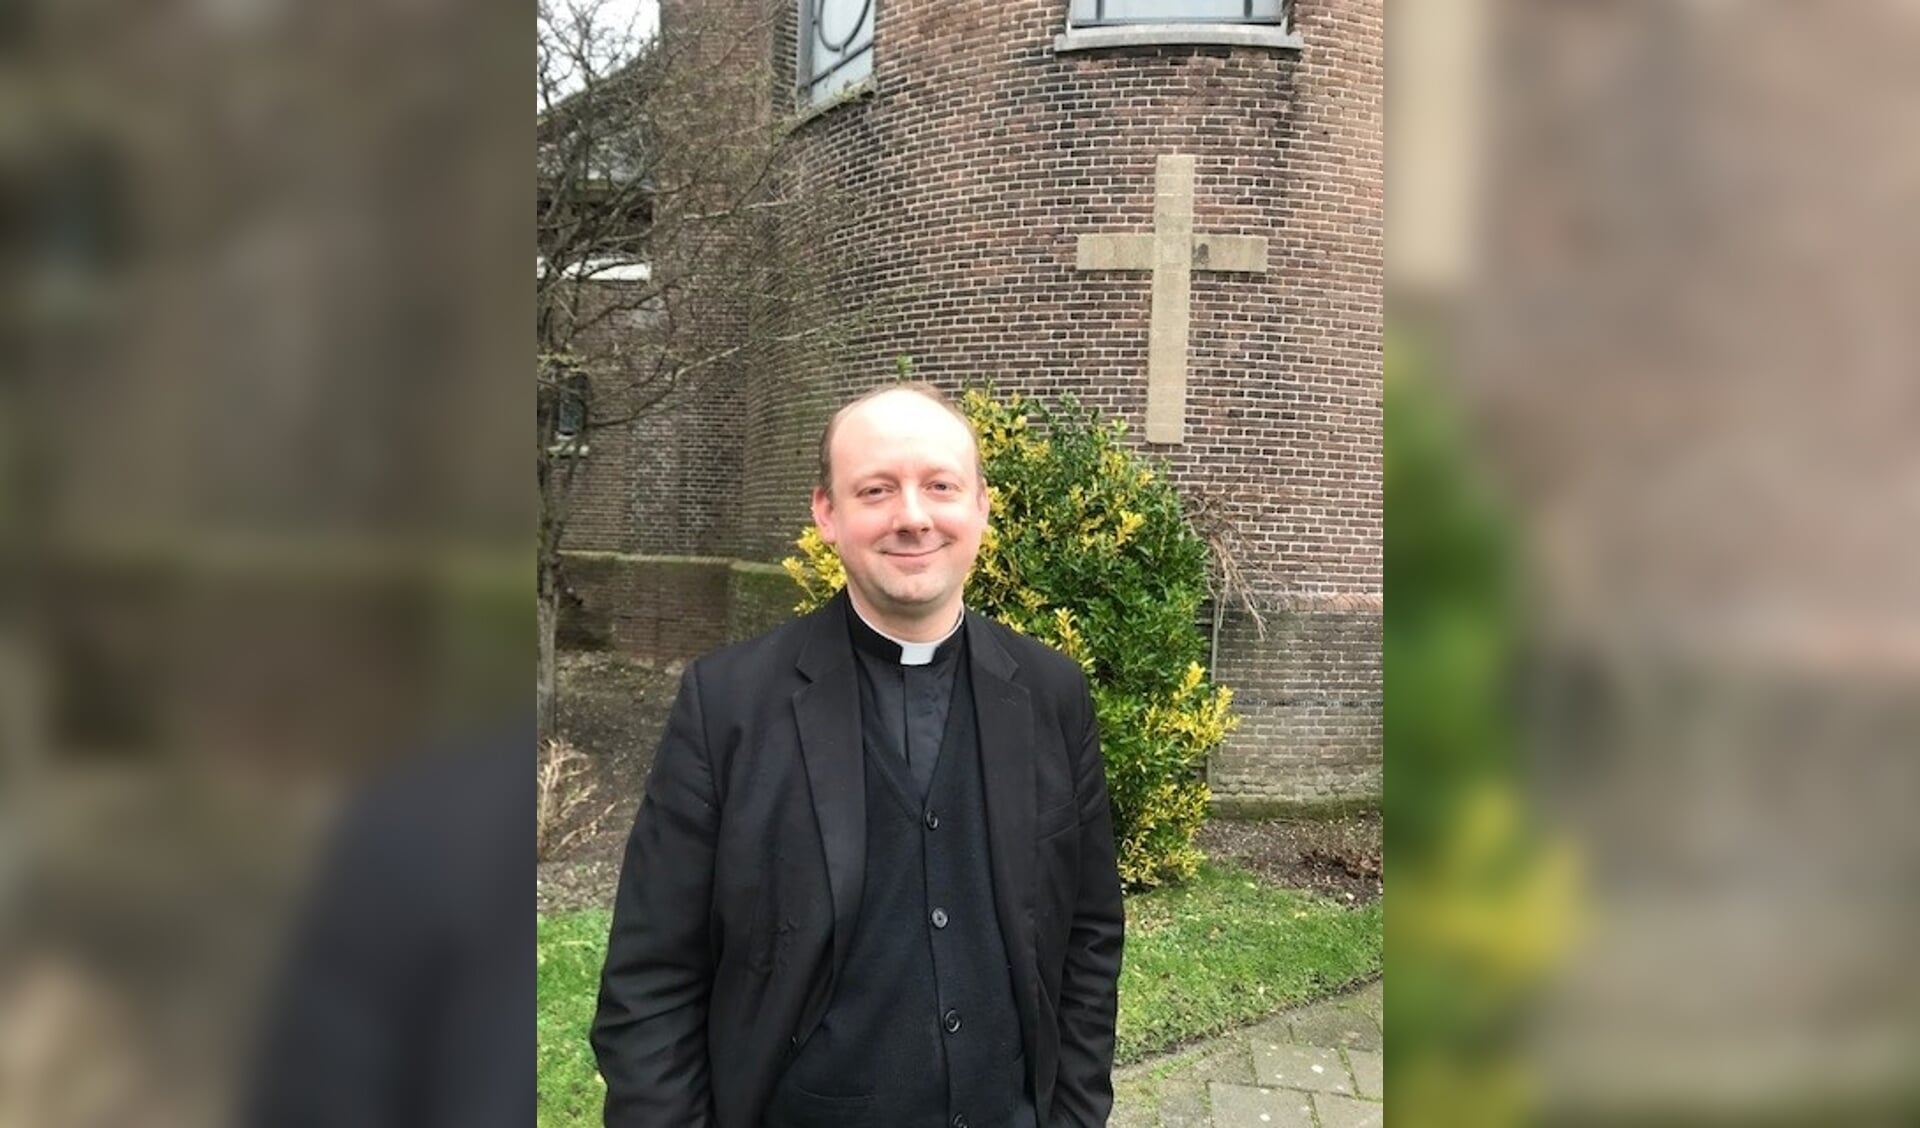  Pastoor Floris Bunschoten neemt op zondag 26 februari officieel afscheid van de Zaanstreek.